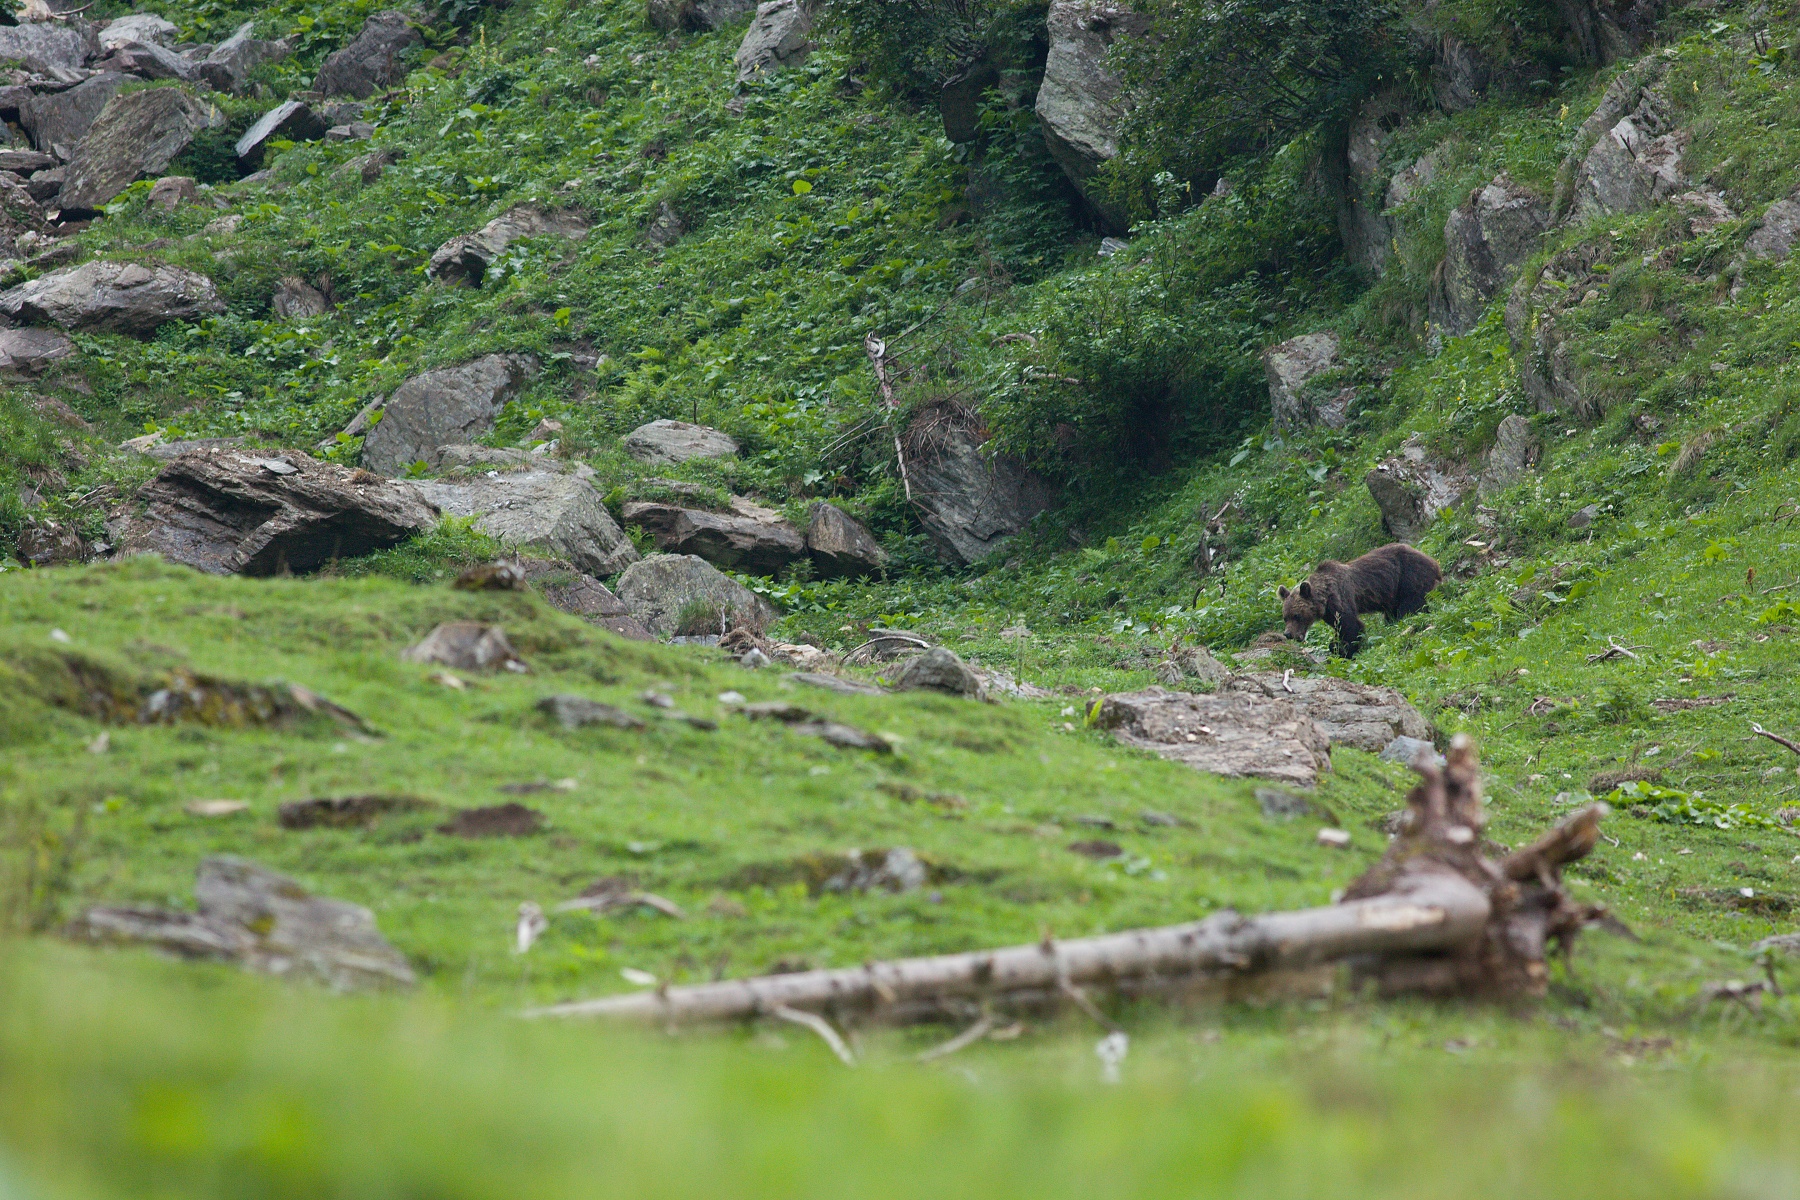 medveď hnedý (Ursus arctos) Brown bear, Valea Arpasului, Munții Făgăraș, Romania Canon EOS 5D mark III, Canon 400 mm f5.6 L USM, f6.3, 1/200, ISO 1600, 31. august 2018